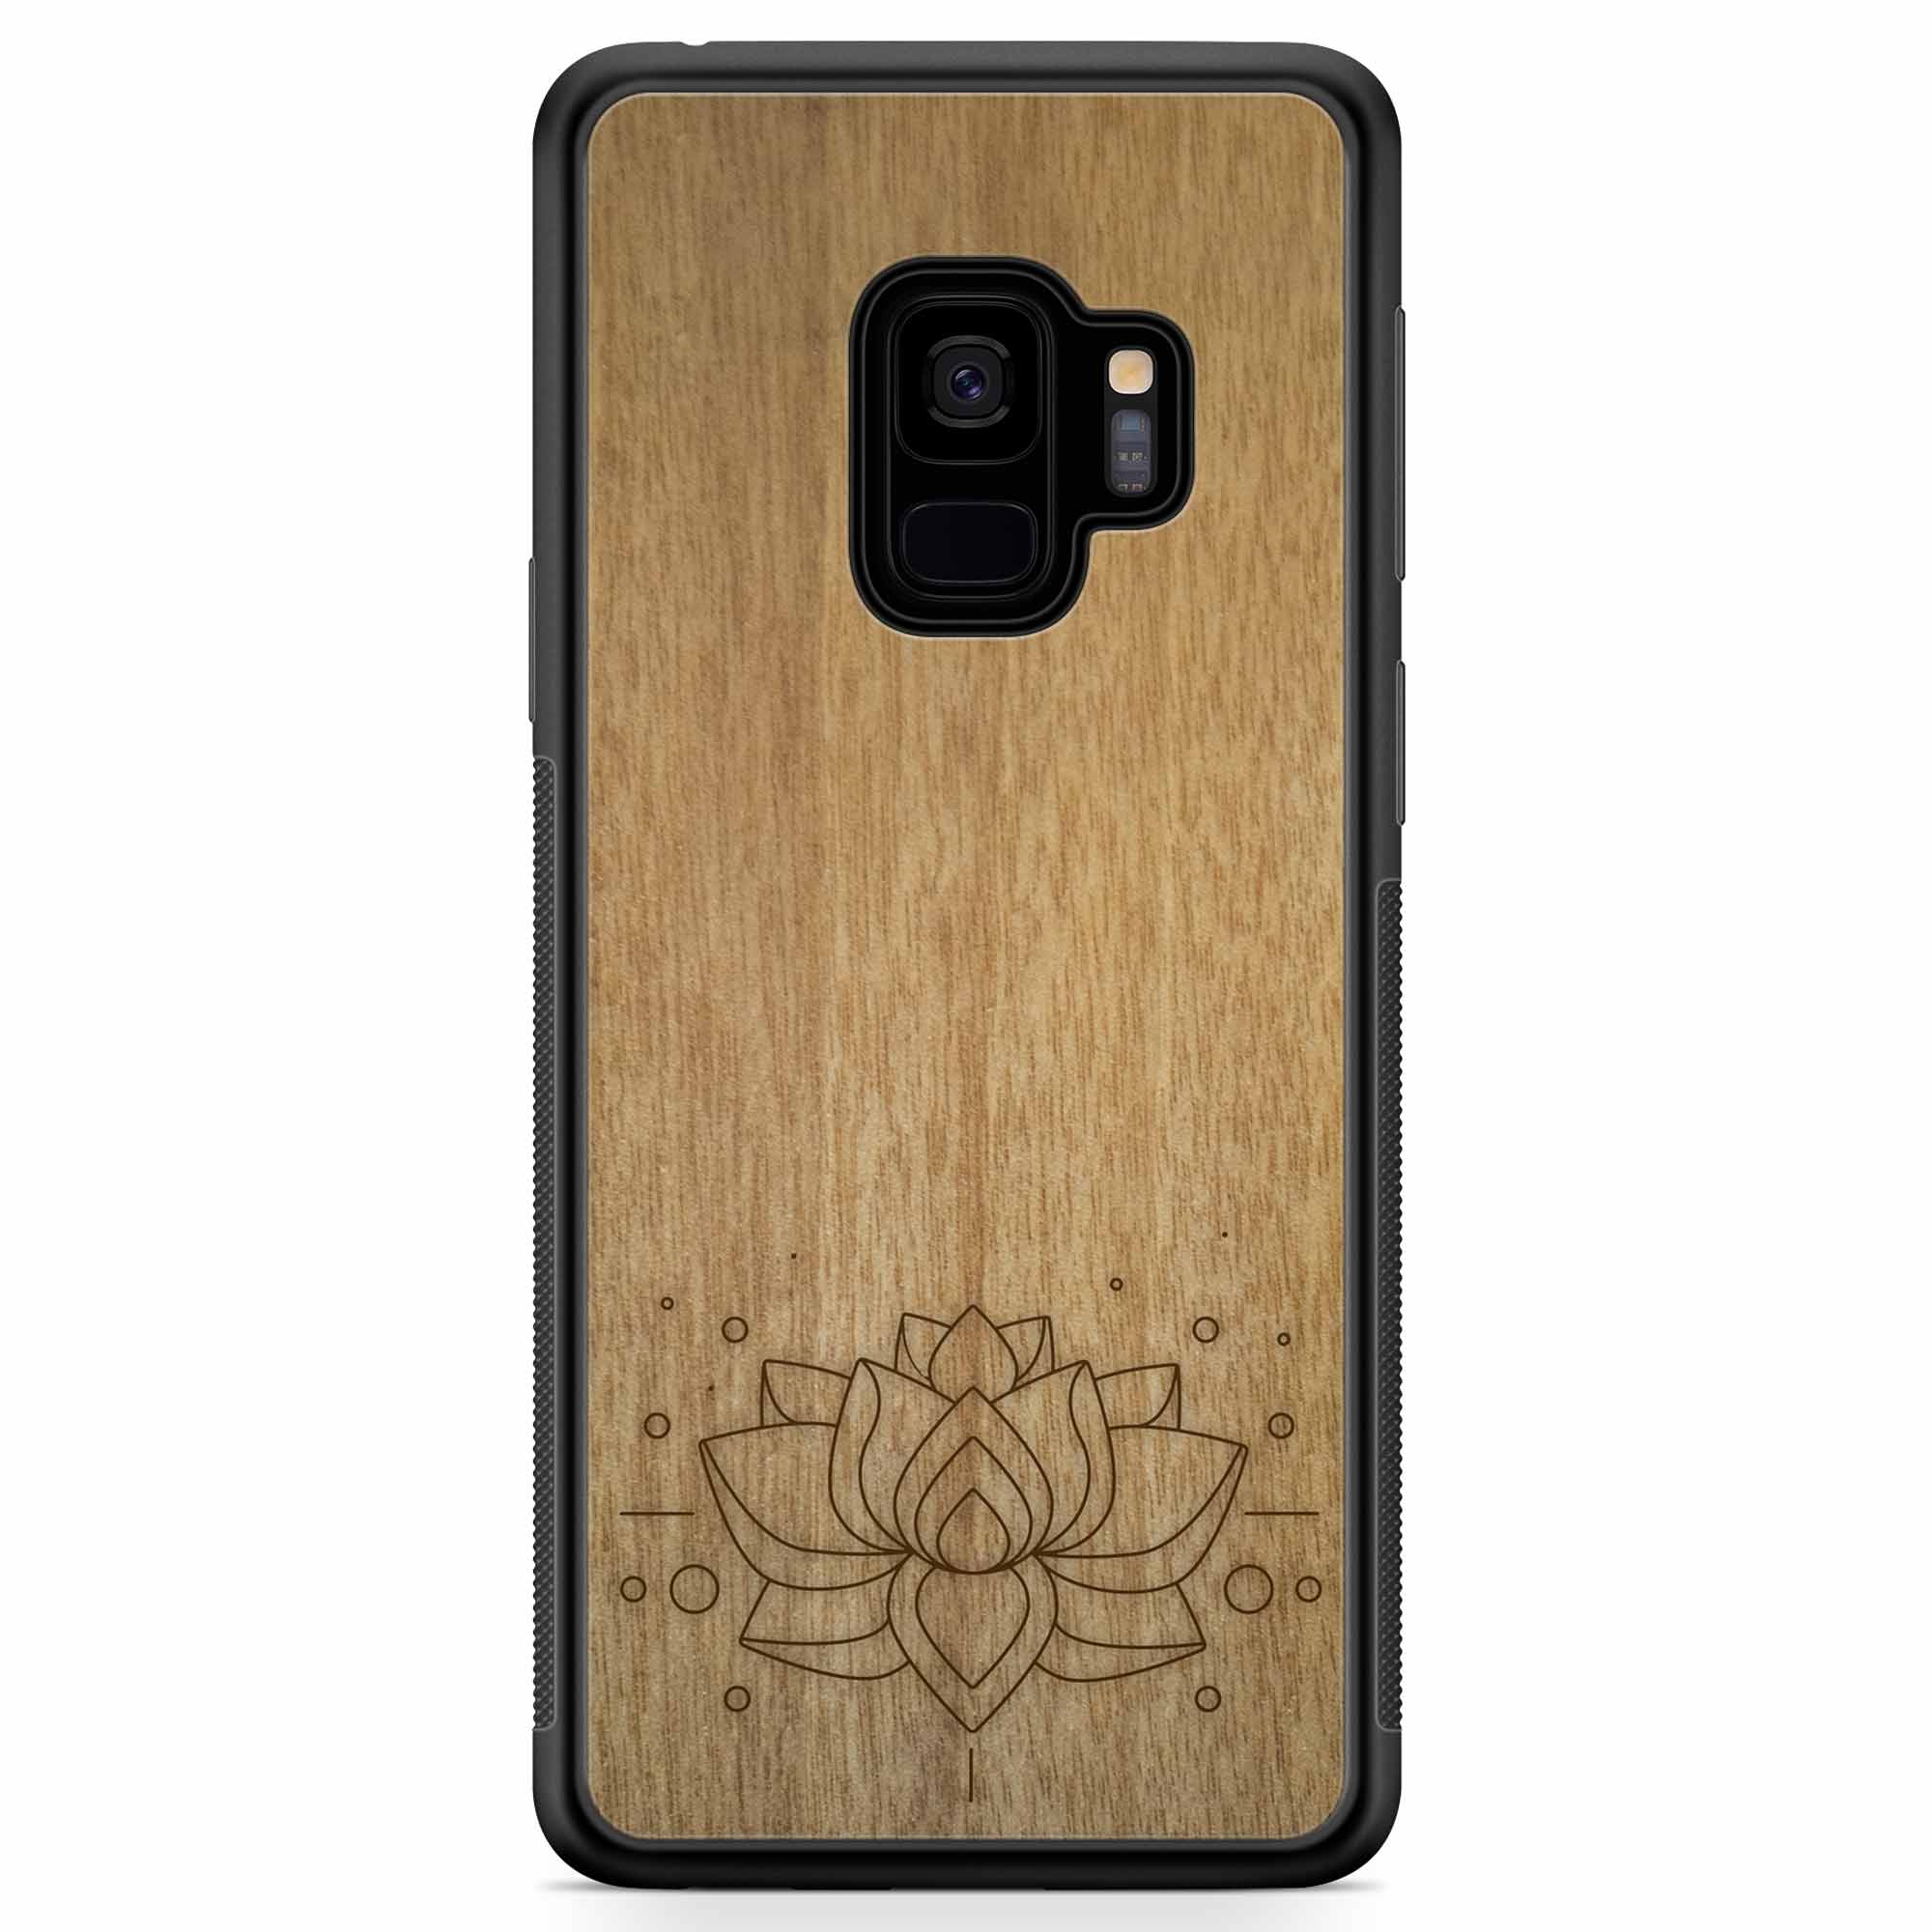 Custodia per telefono in legno con incisione Lotus Samsung S9